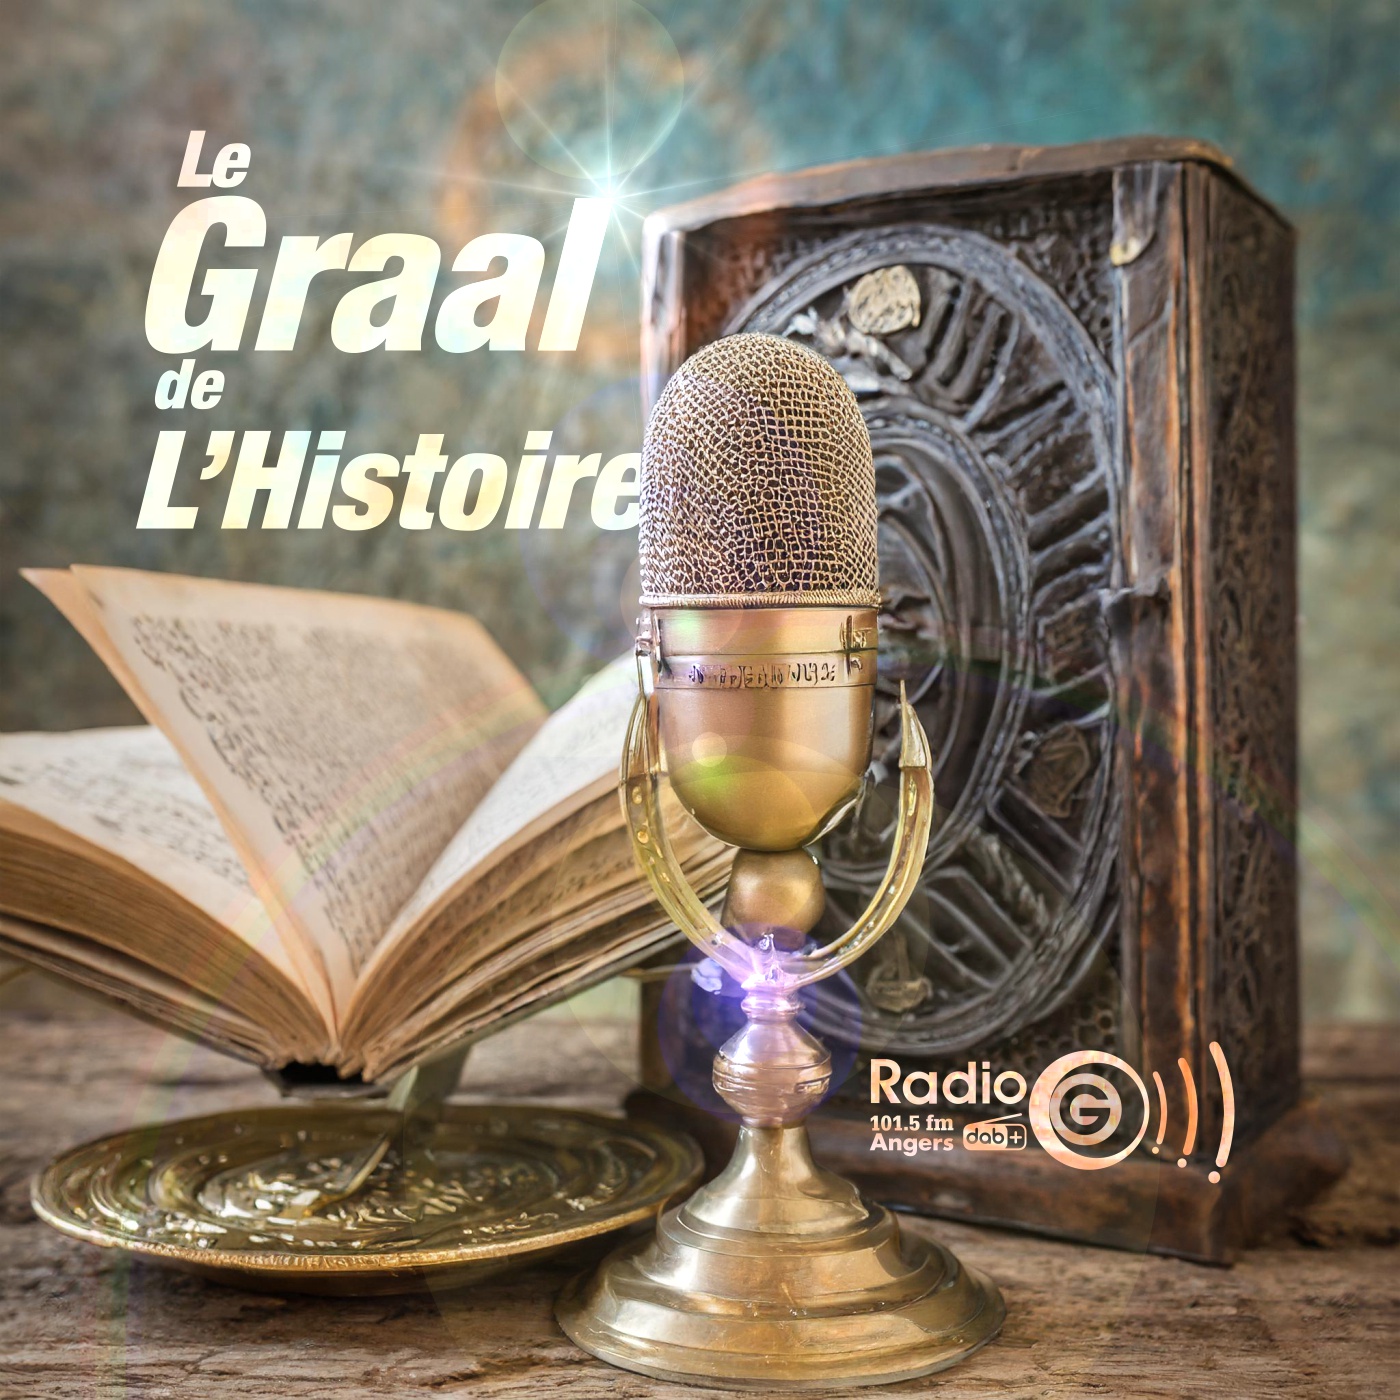 Graalv3 4 Christophe Le Graal de l'Histoire, un podcast avec des voix et des musiques en intelligence artificielles Graalv3 4 Christophe